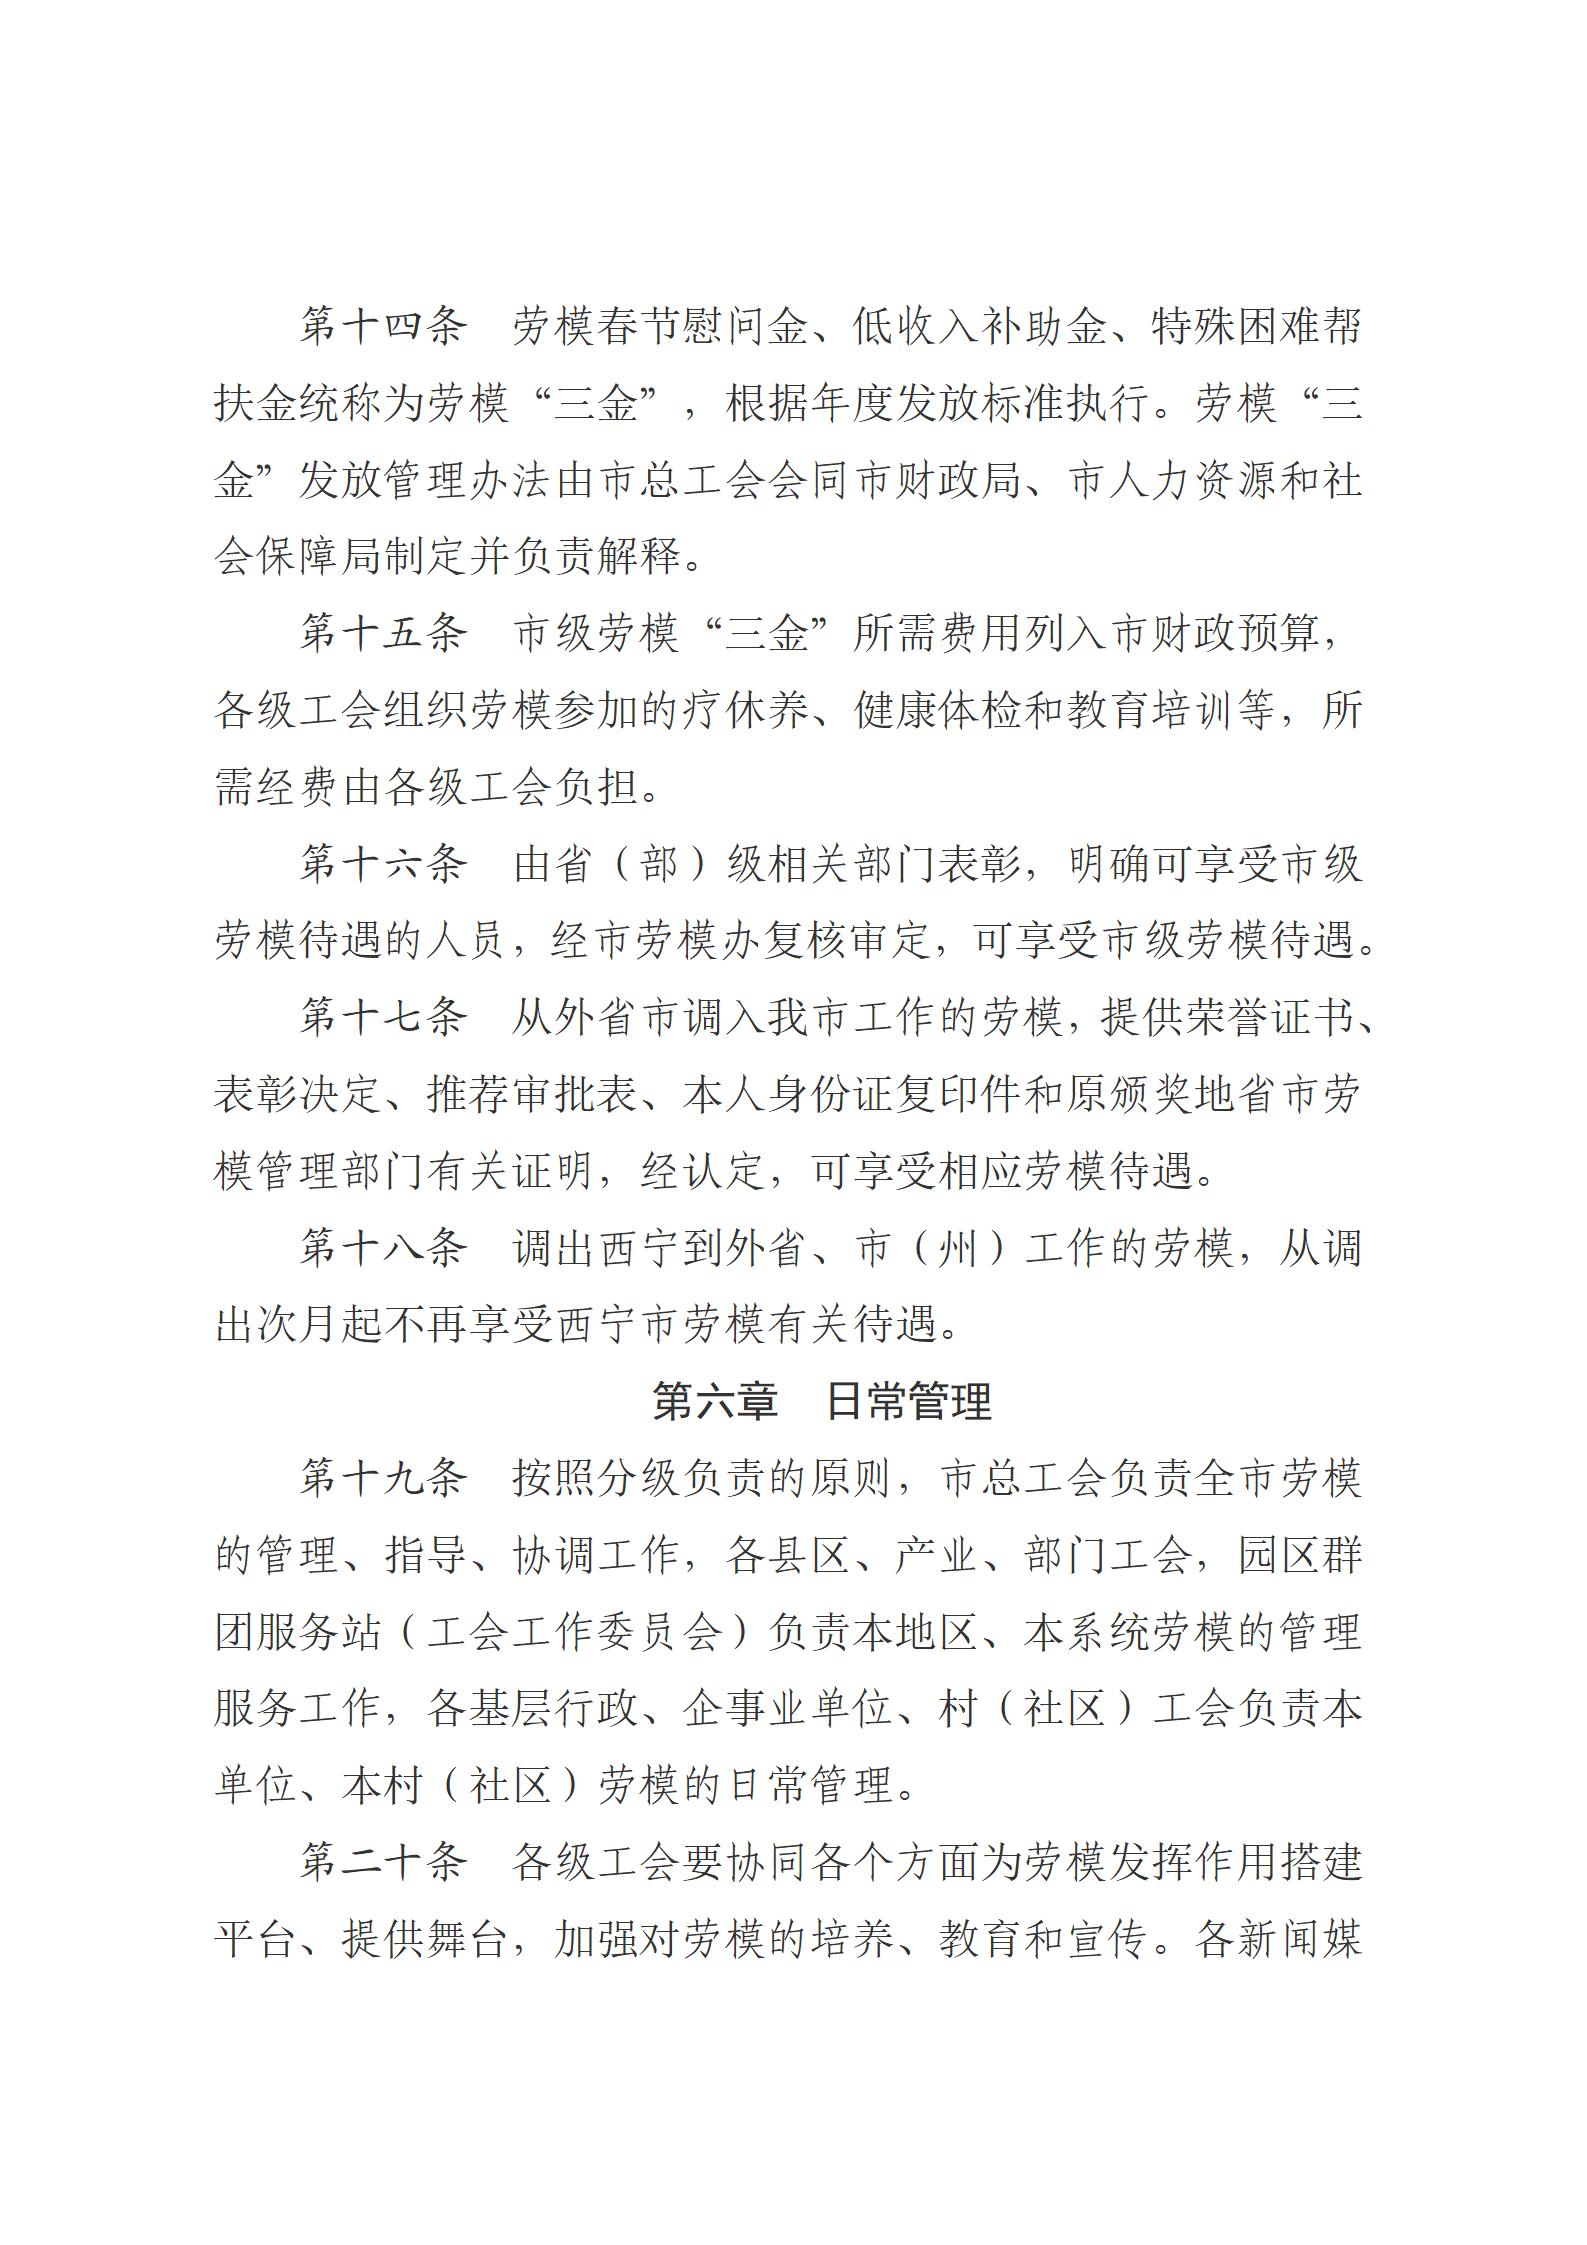 1.西宁市劳动模范评选和管理工作办法(1)_08.jpg